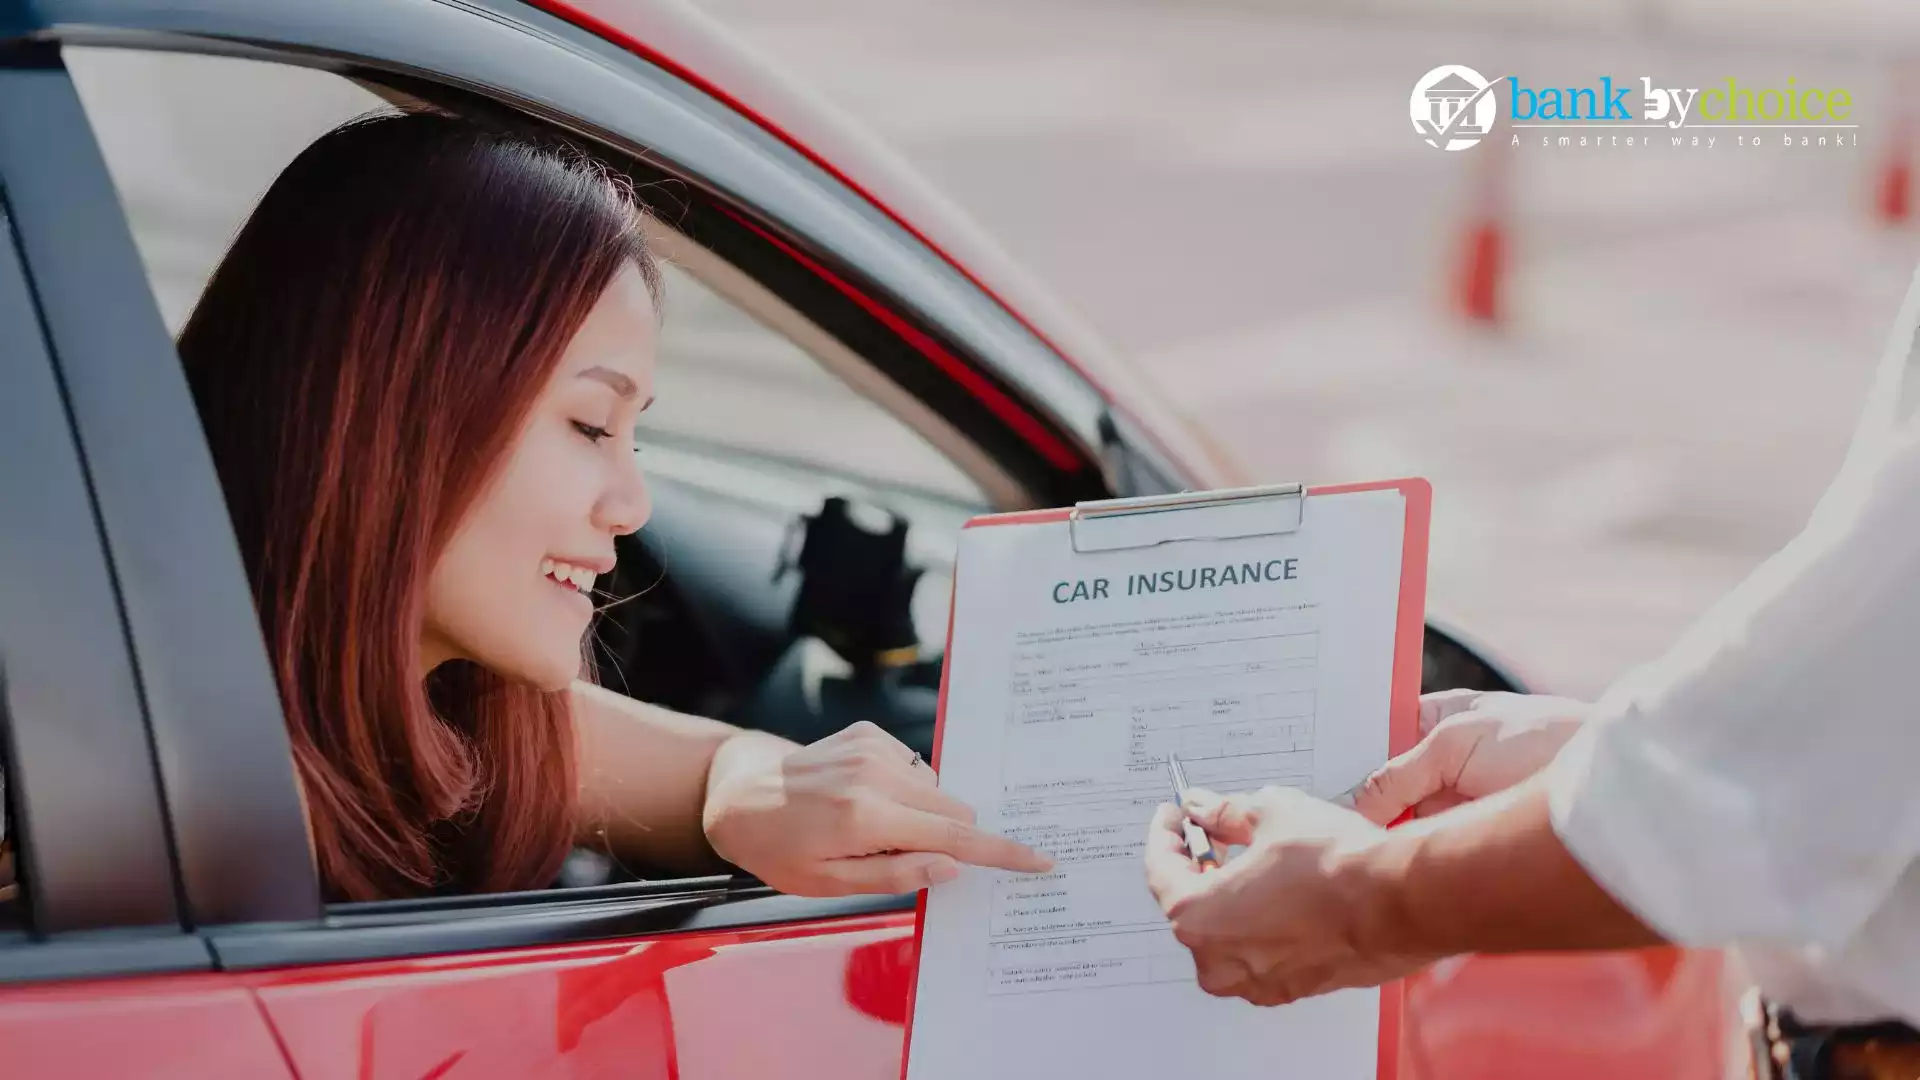 cheap car insurance in dubai- Bankbychoice